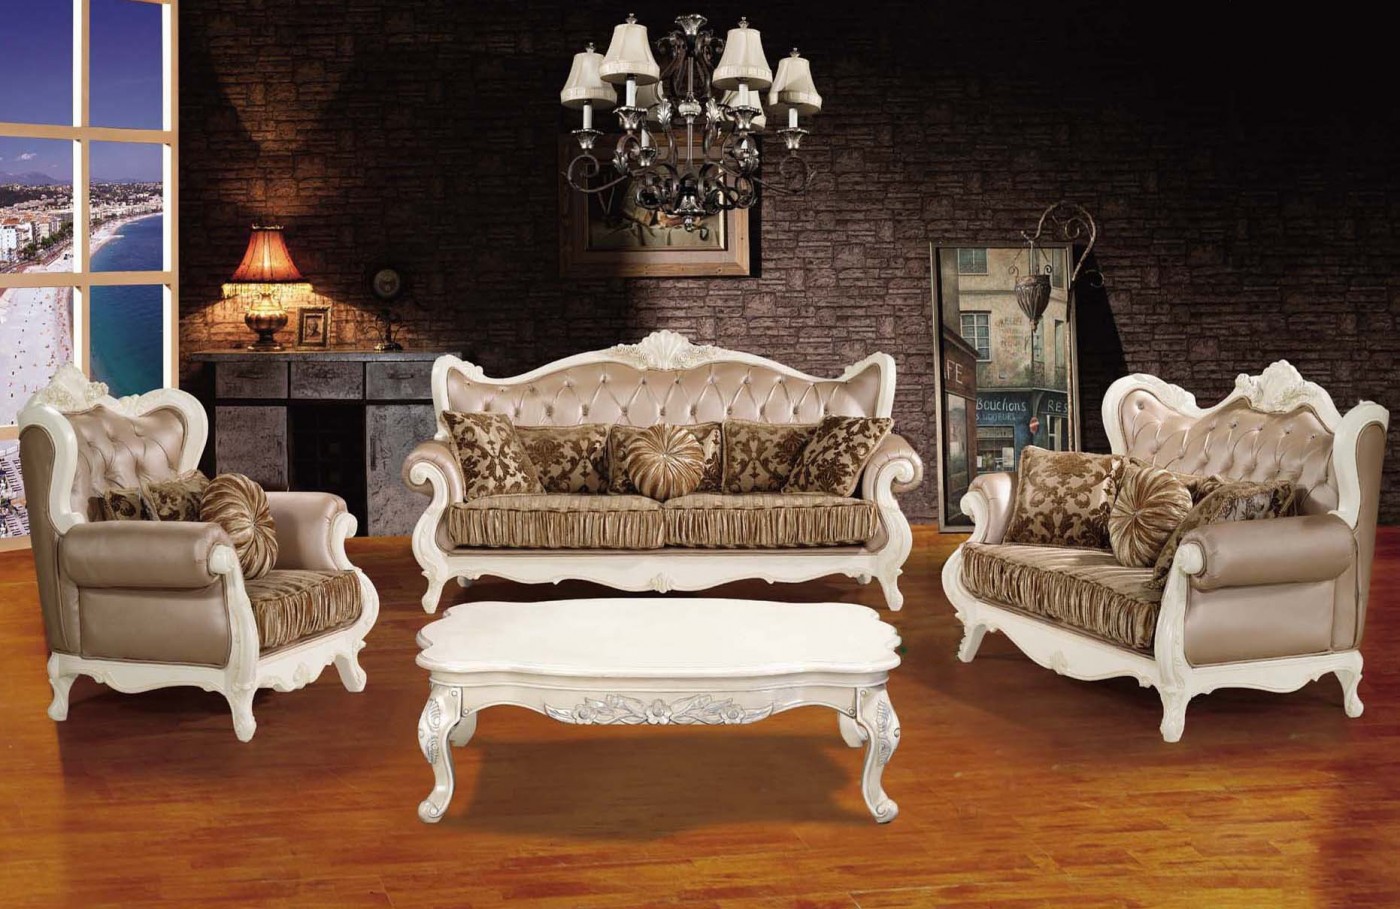 Sofa cổ điển là dòng ghế được thiết kế dựa trên phong cách thiết kế cổ điển truyền thống